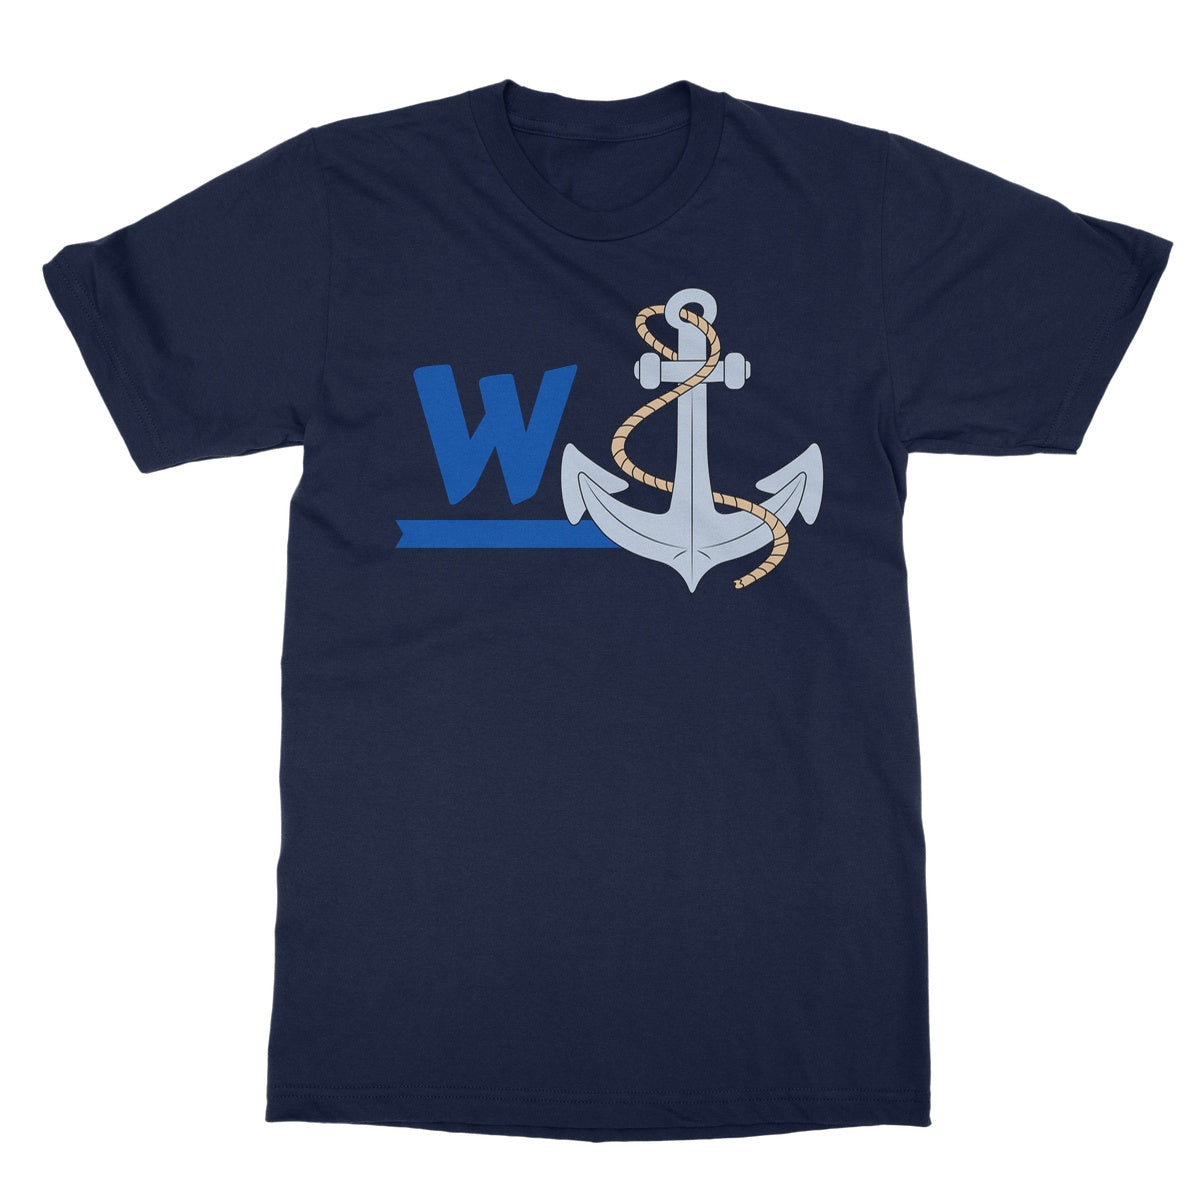 wanchor t shirt navy